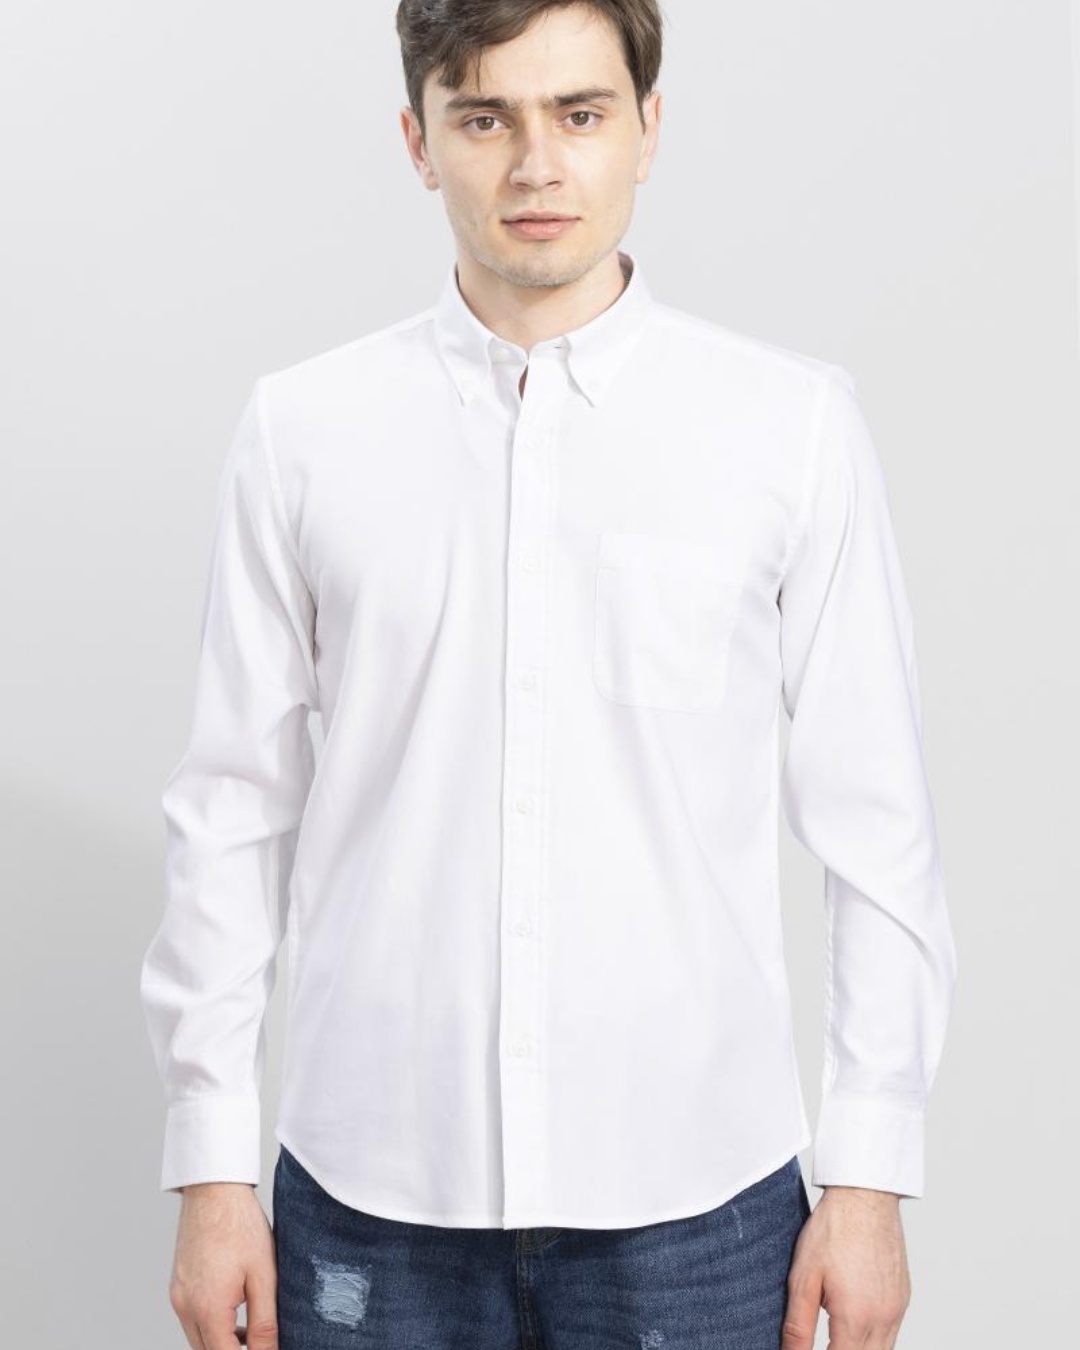 Buy Men's White Slim Fit Shirt for Men White Online at Bewakoof